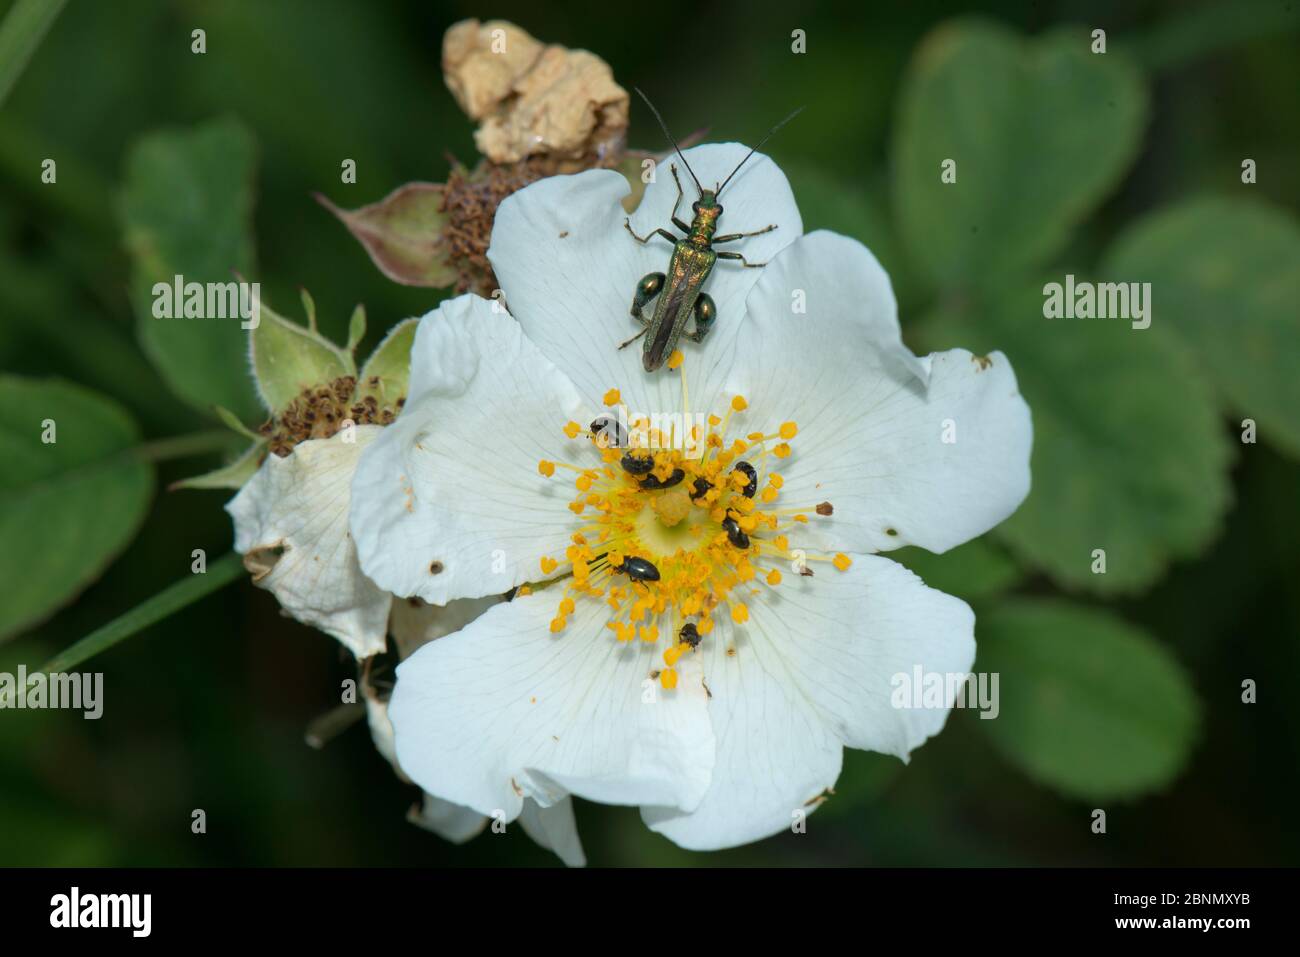 Coléoptère à pattes épaisses (Oedemera nobilis) et coléoptères polliniques (Meligethes aeneus) sur la roseraie de champ (Rosa arvensis), Herefordshire, Angleterre, Royaume-Uni, juillet. Banque D'Images